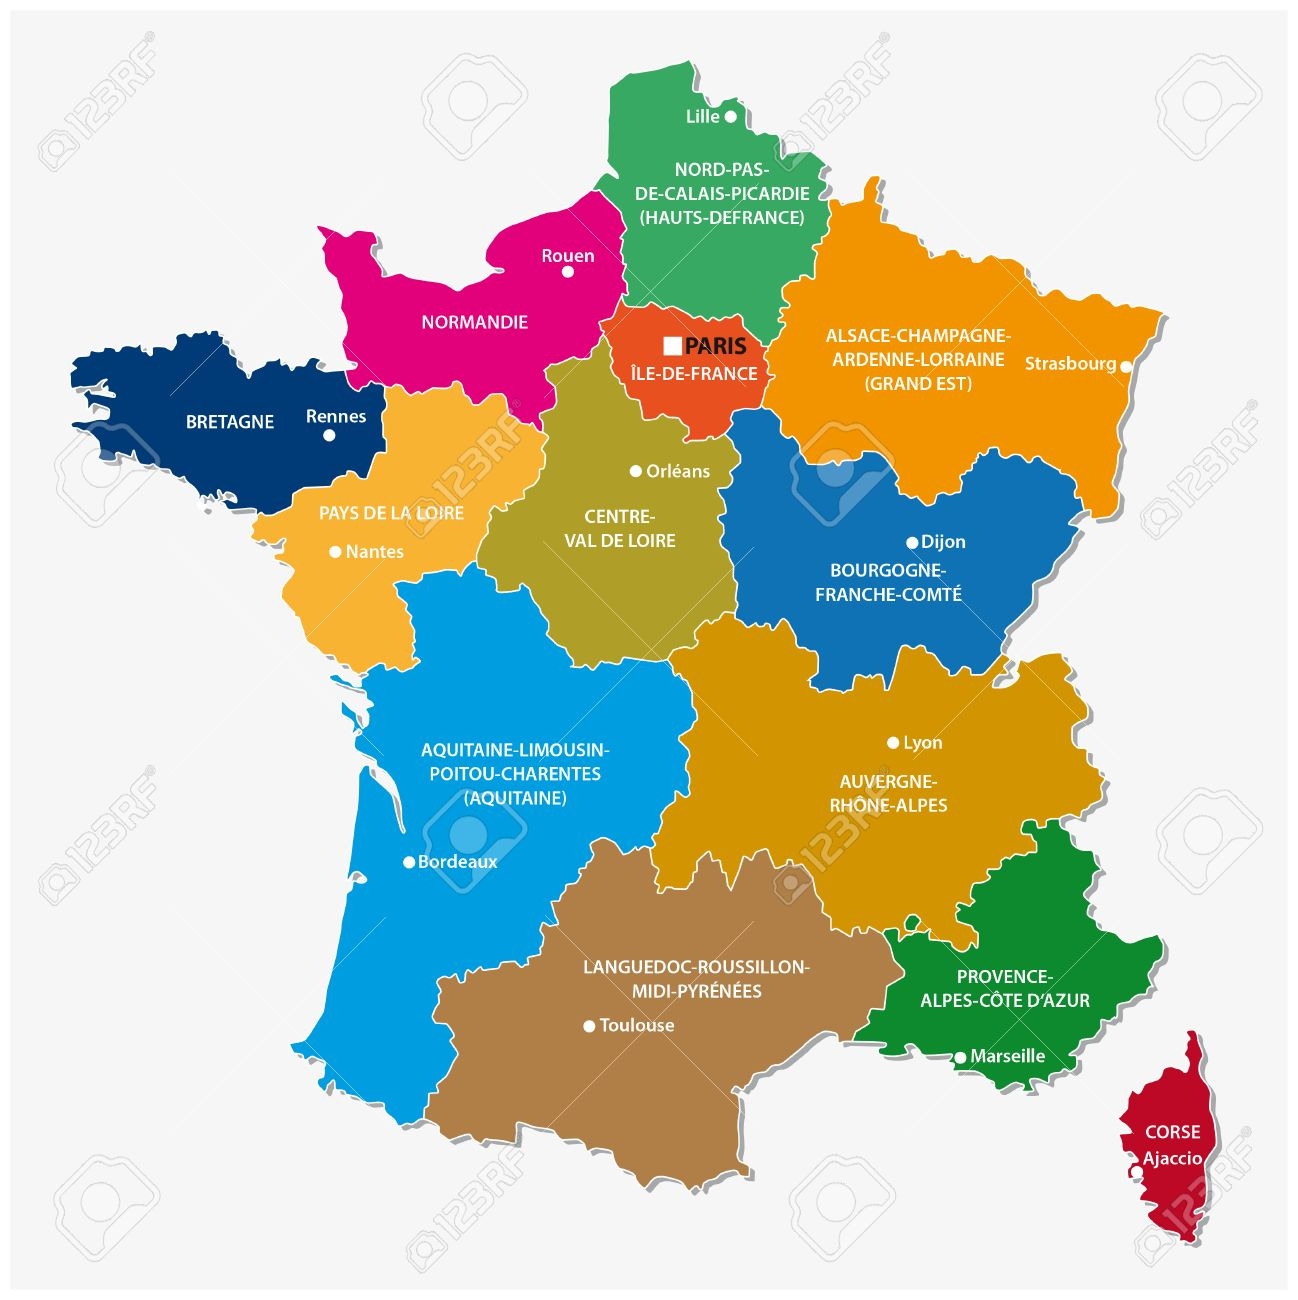 Les Nouvelles Régions De France Depuis La Carte encequiconcerne Carte Des Nouvelles Régions En France 